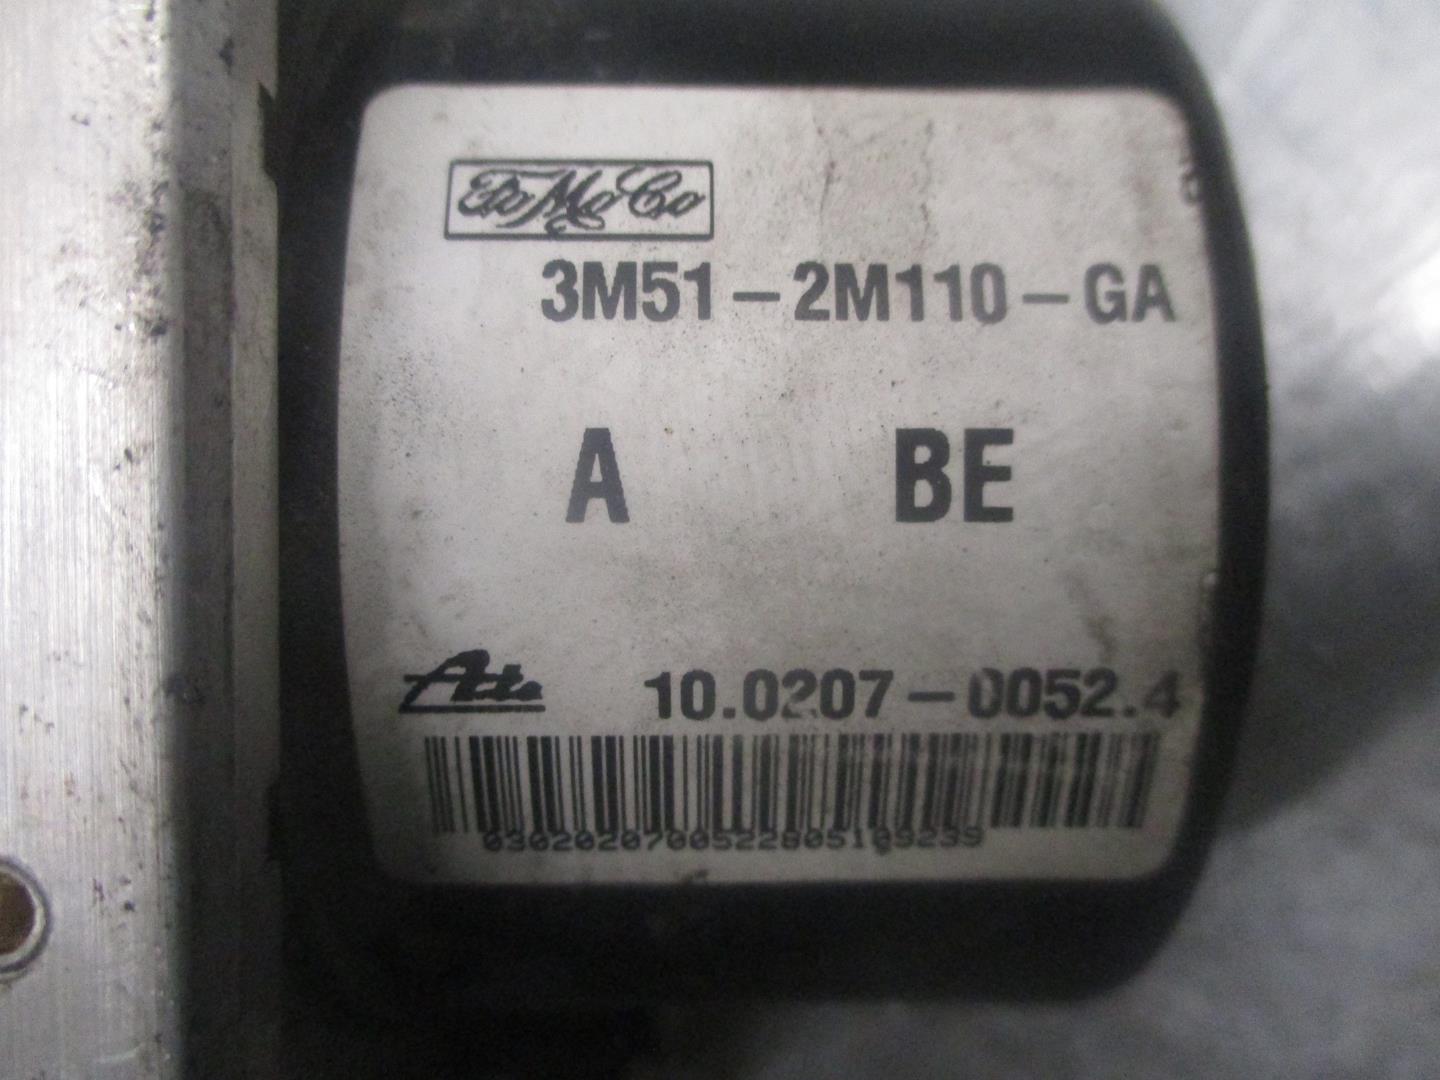 MAZDA 3 BK (2003-2009) Pompe ABS 3M512M110GA, 100207000524, ATE 19770568